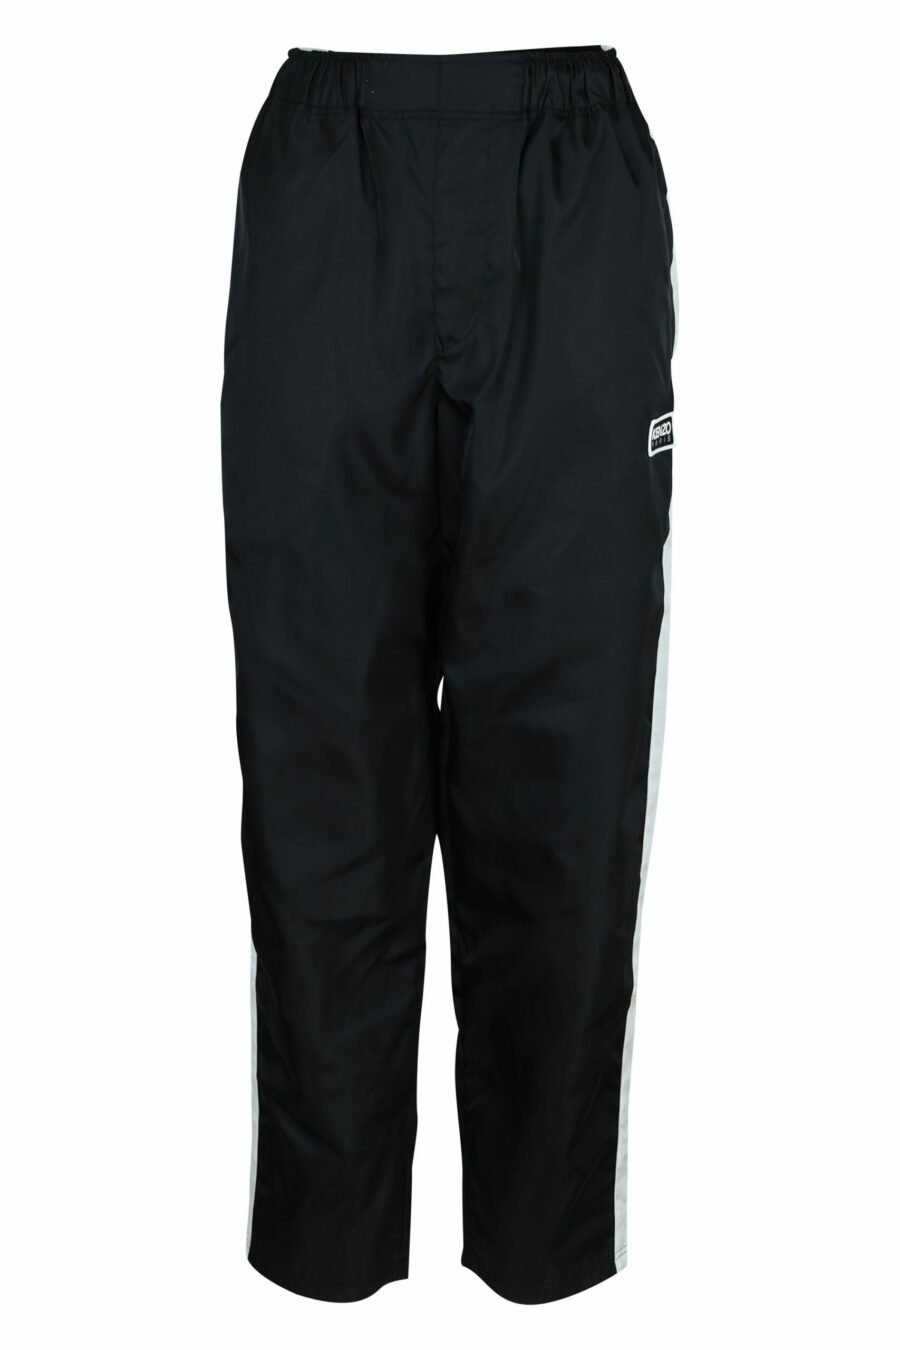 Pantalón de chándal negro con minilogo "kenzo" - 3612230584853 scaled